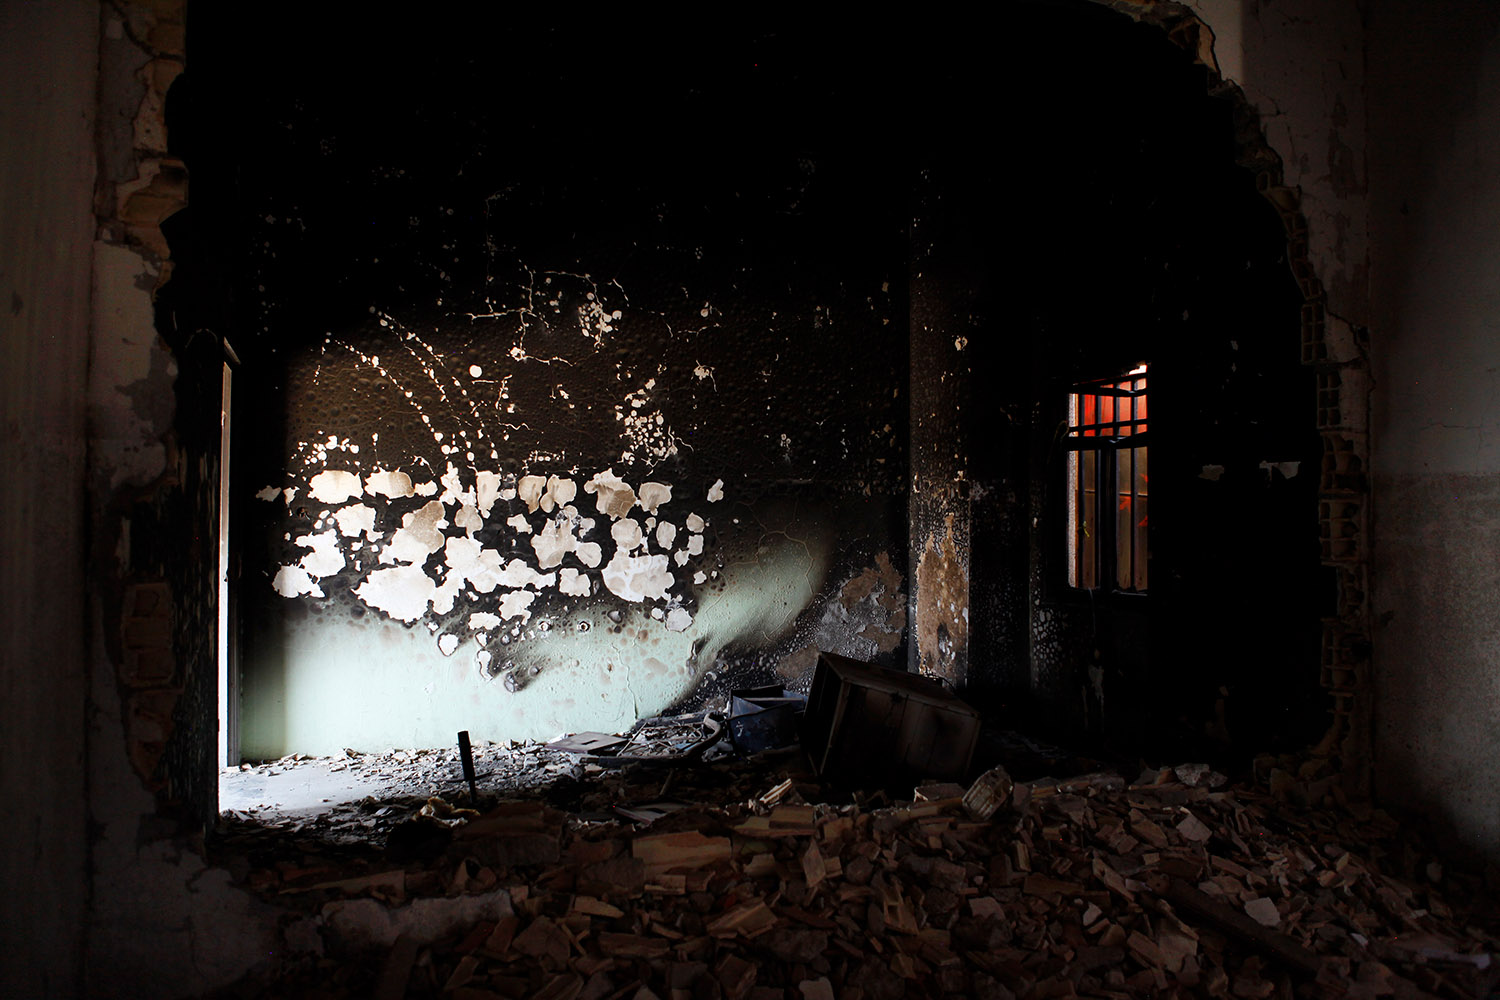 Les décombres de la ville de Tobrouk. On voit des débris, des murs noircis par le feu et des impacts de balles dans la pierre.